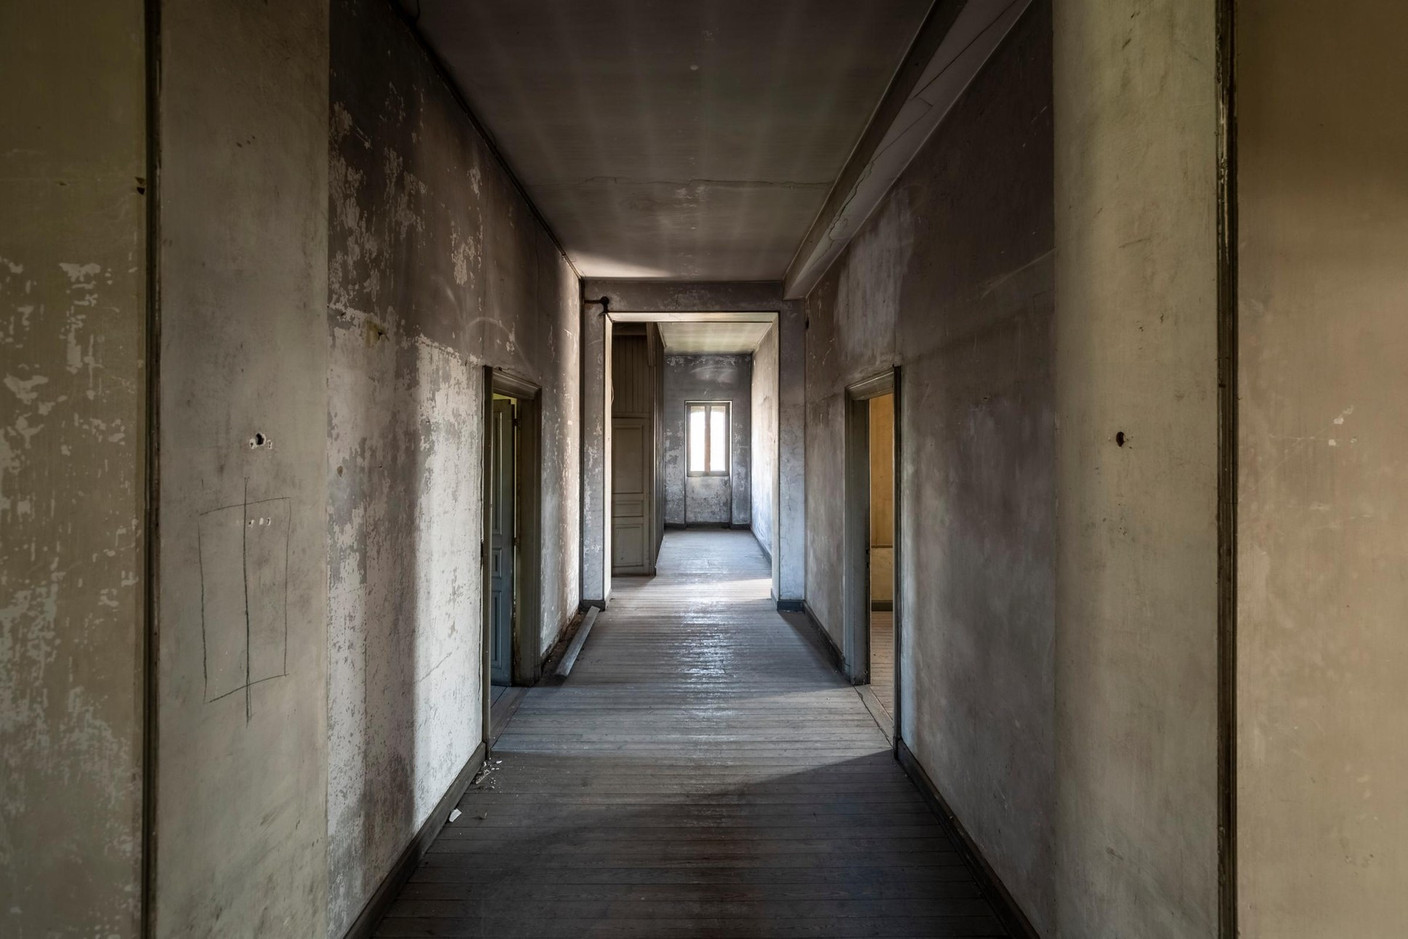 Le couloir du dernier étage, niveau destiné à l’époque à loger les domestiques. (Photo: Jan Hanrion/Patricia Pitsch – archives Maison Moderne)